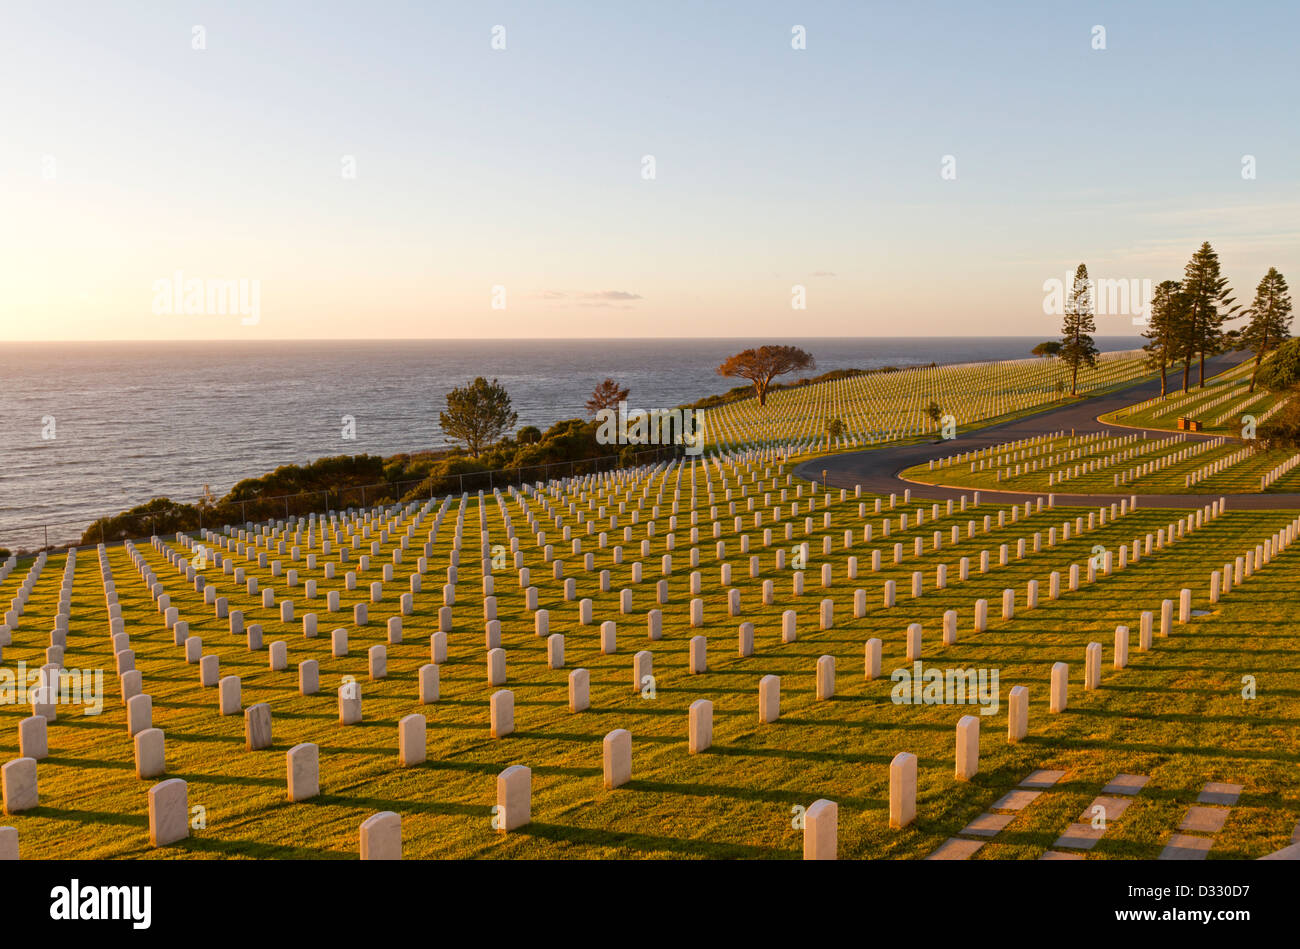 Cimitero militare di San Diego, California, Stati Uniti d'America Foto Stock